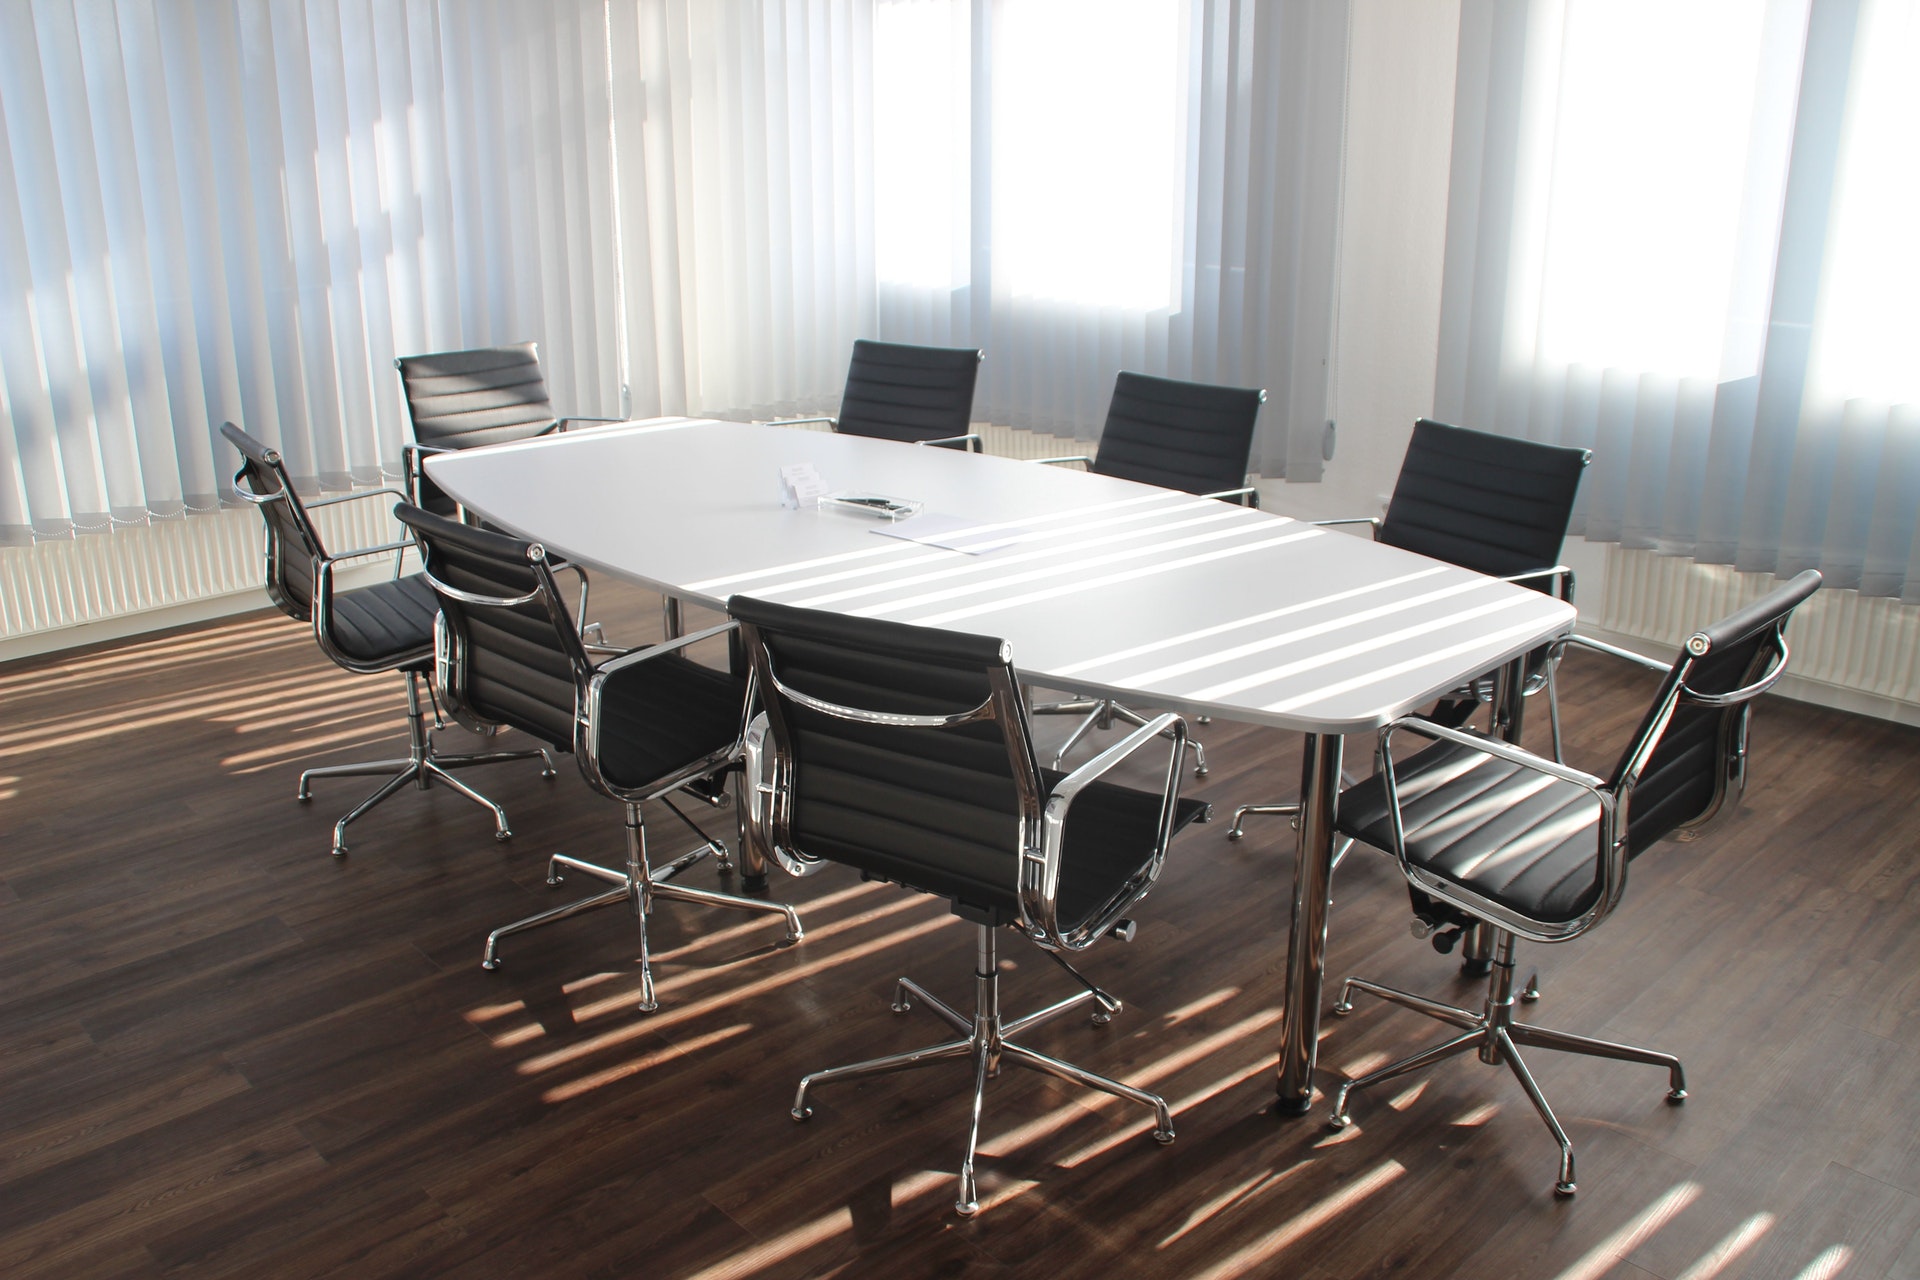 Choisissez une longue table pour la salle de réunion